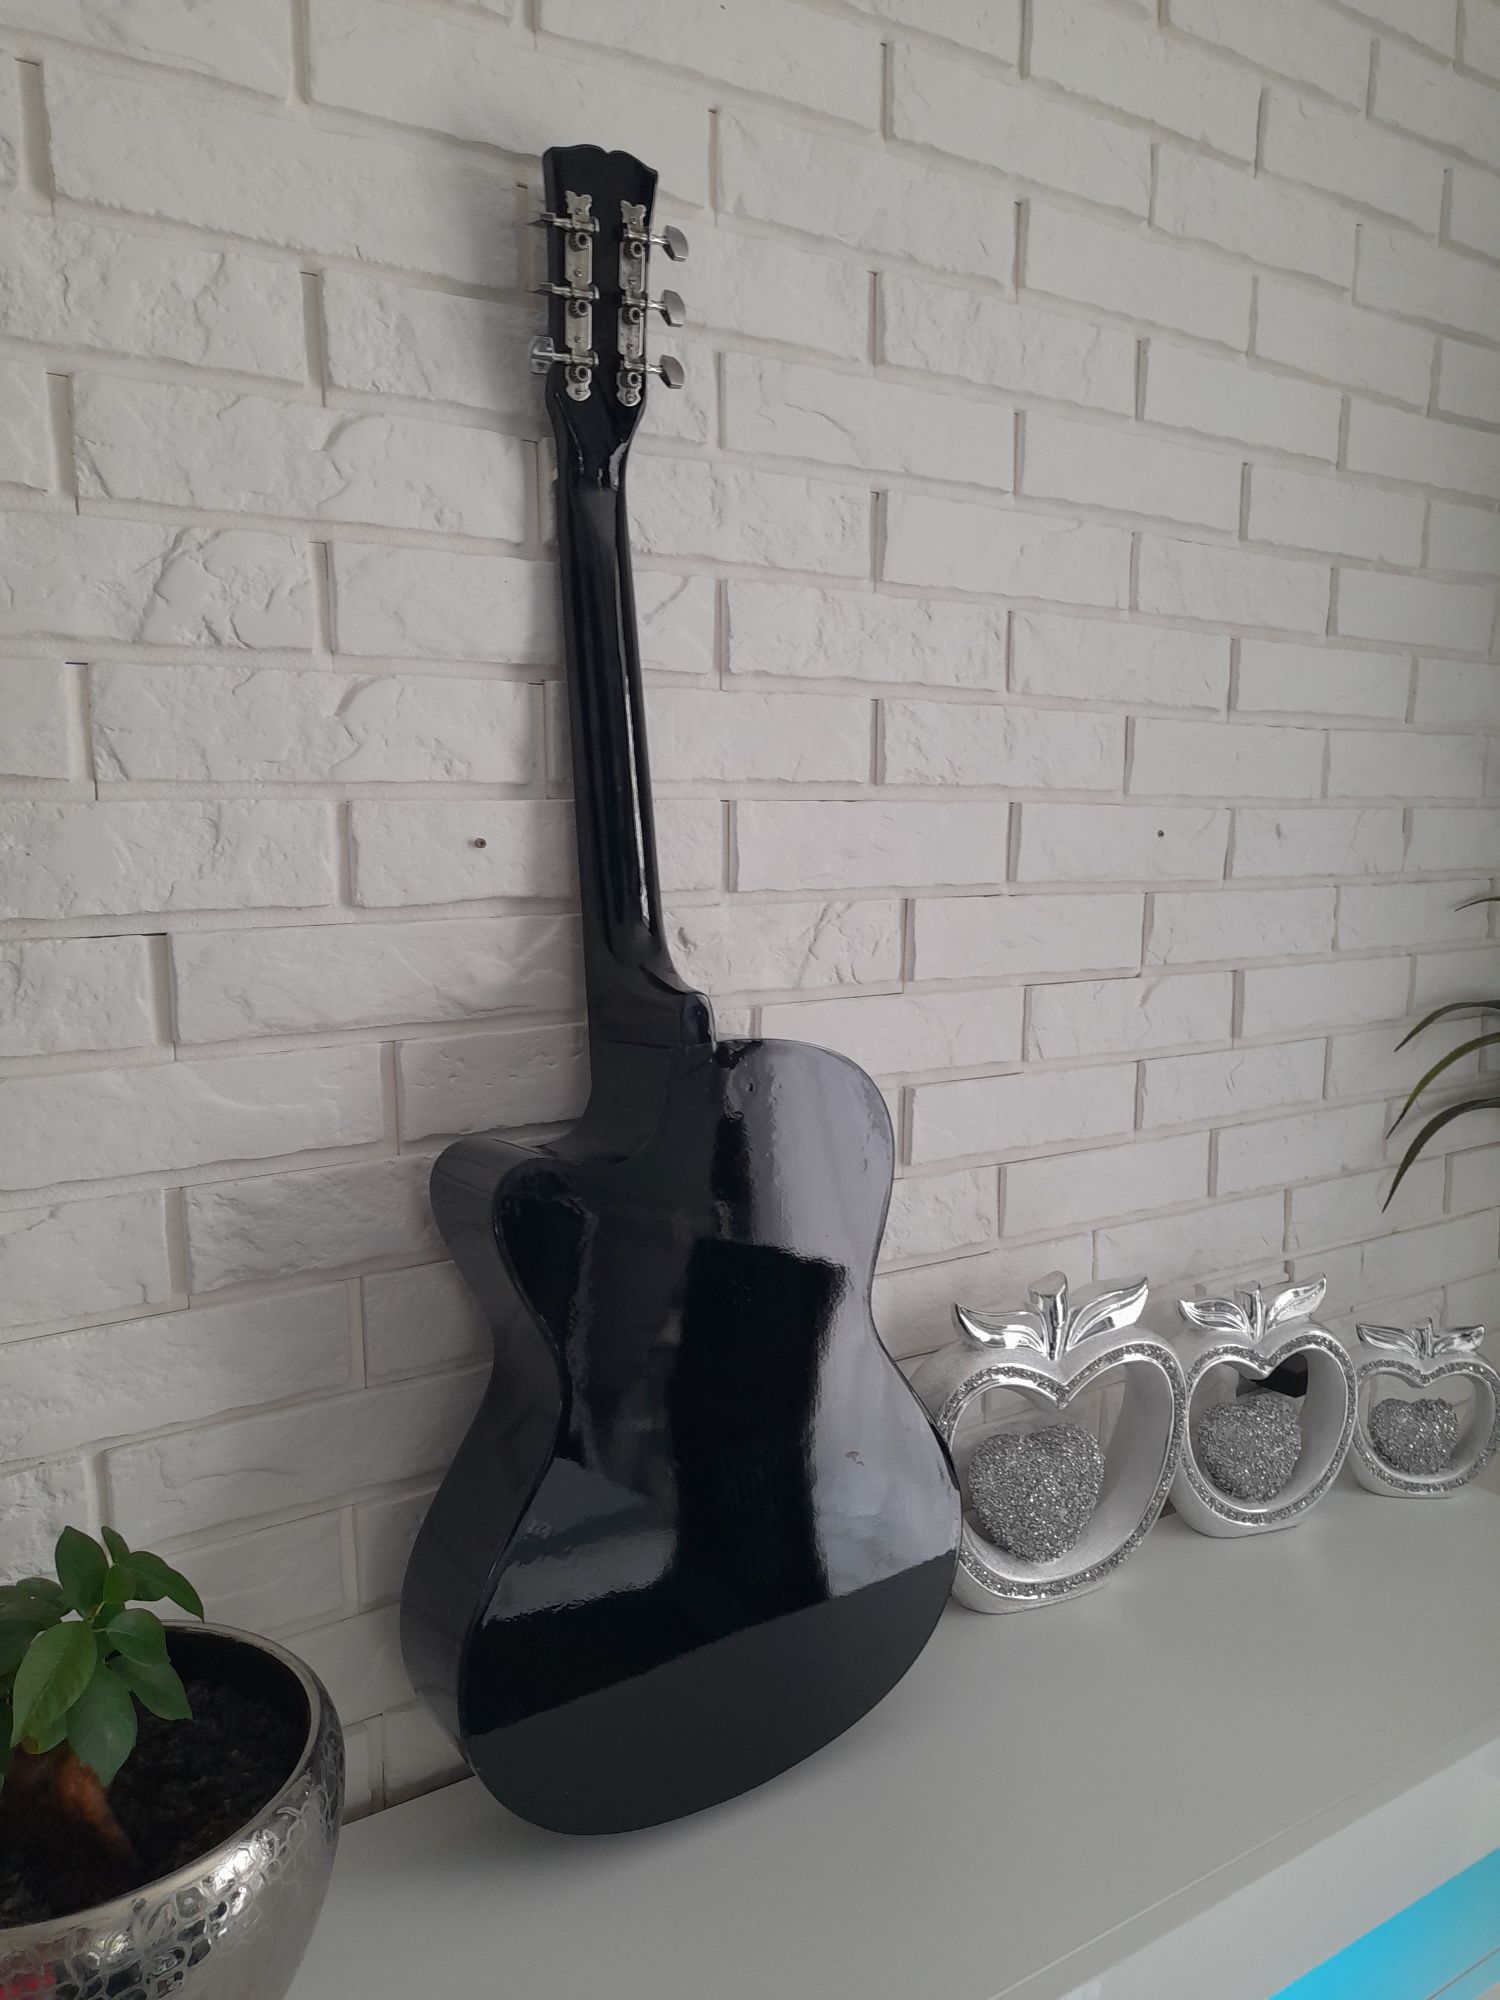 Gitara akustyczna Castelo G3 rozmiar 4/4 czarny połysk